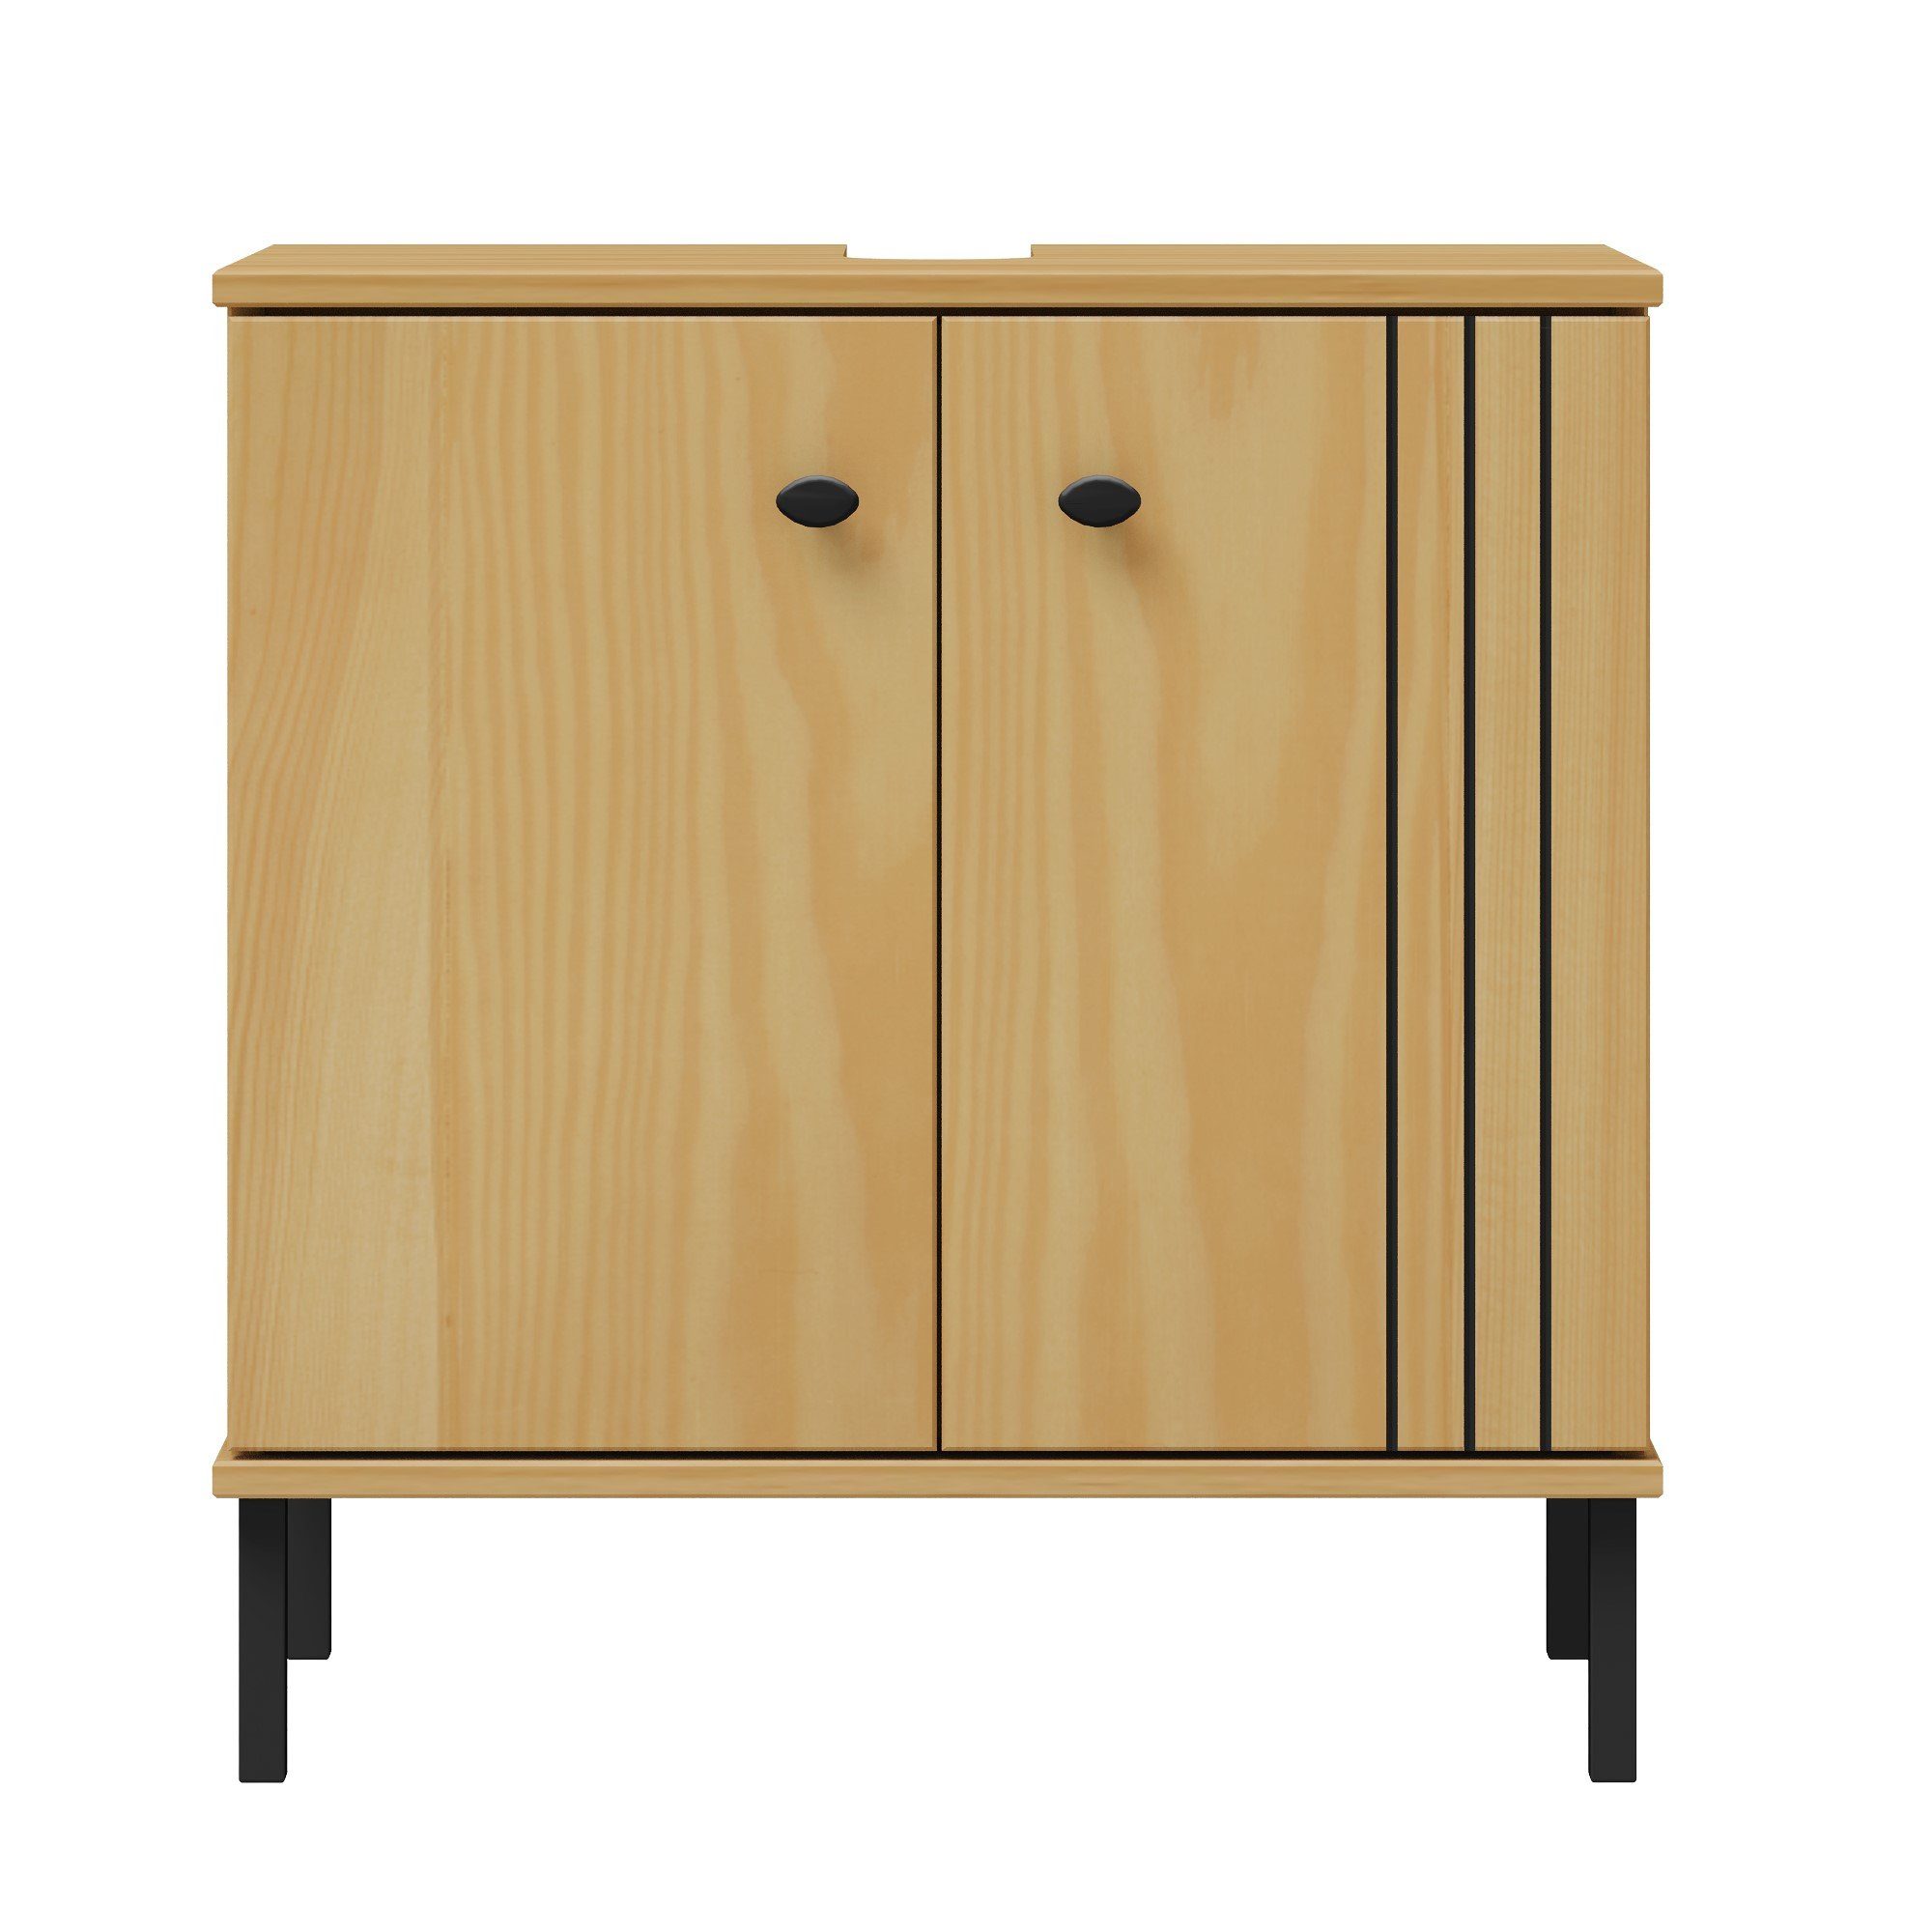 Woodroom Waschbeckenunterschrank Sevilla Kiefer massiv eichefarbig lackiert, BxHxT 62x65x40 cm | Waschbeckenunterschränke